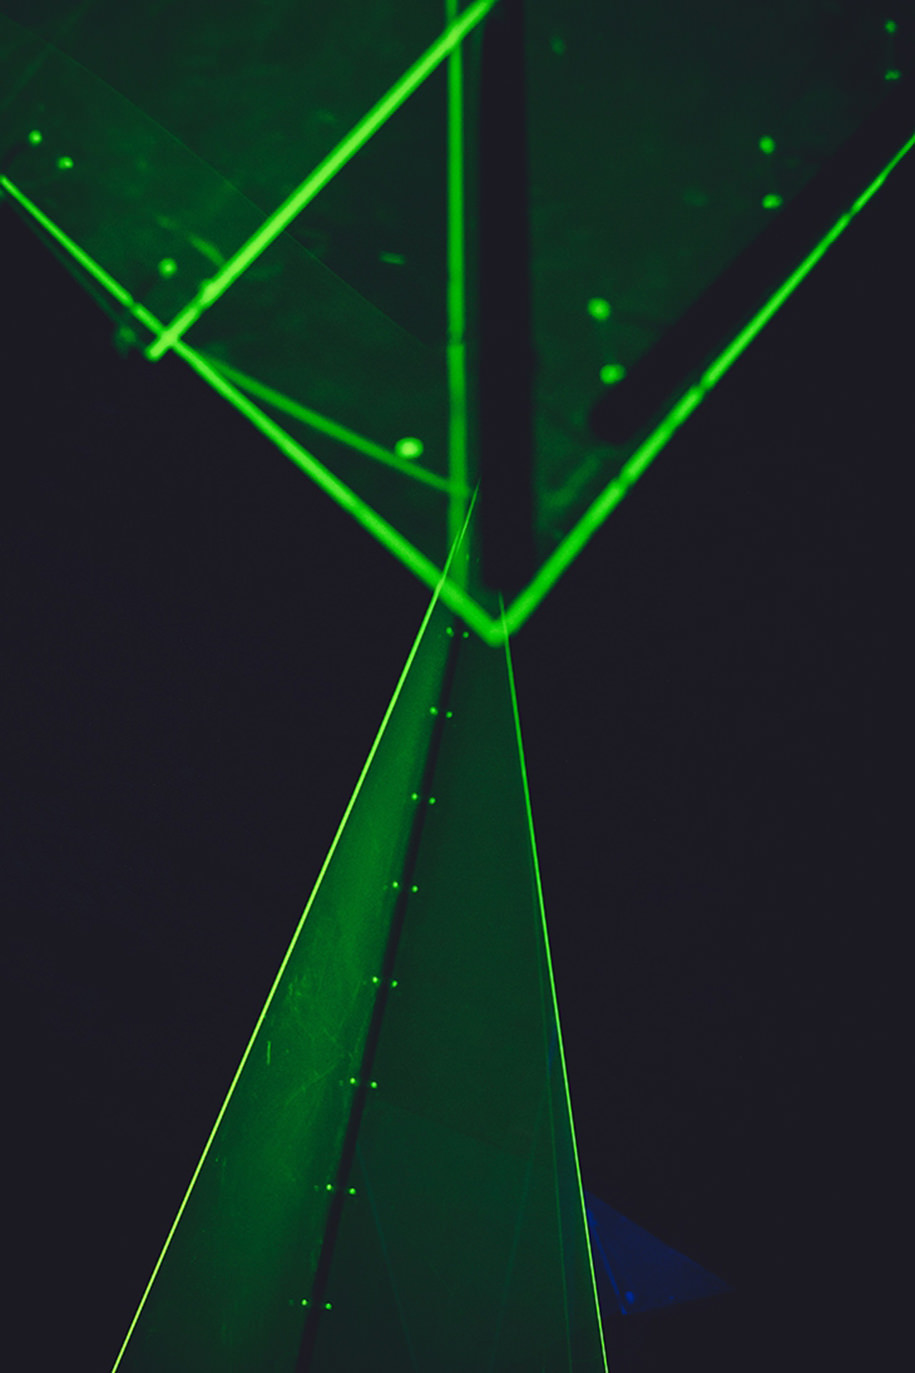 installation, triangular, fluorescent, kosma, kourkouli, fotopoulou, Plexiglas, transparent,Koumoutsidi